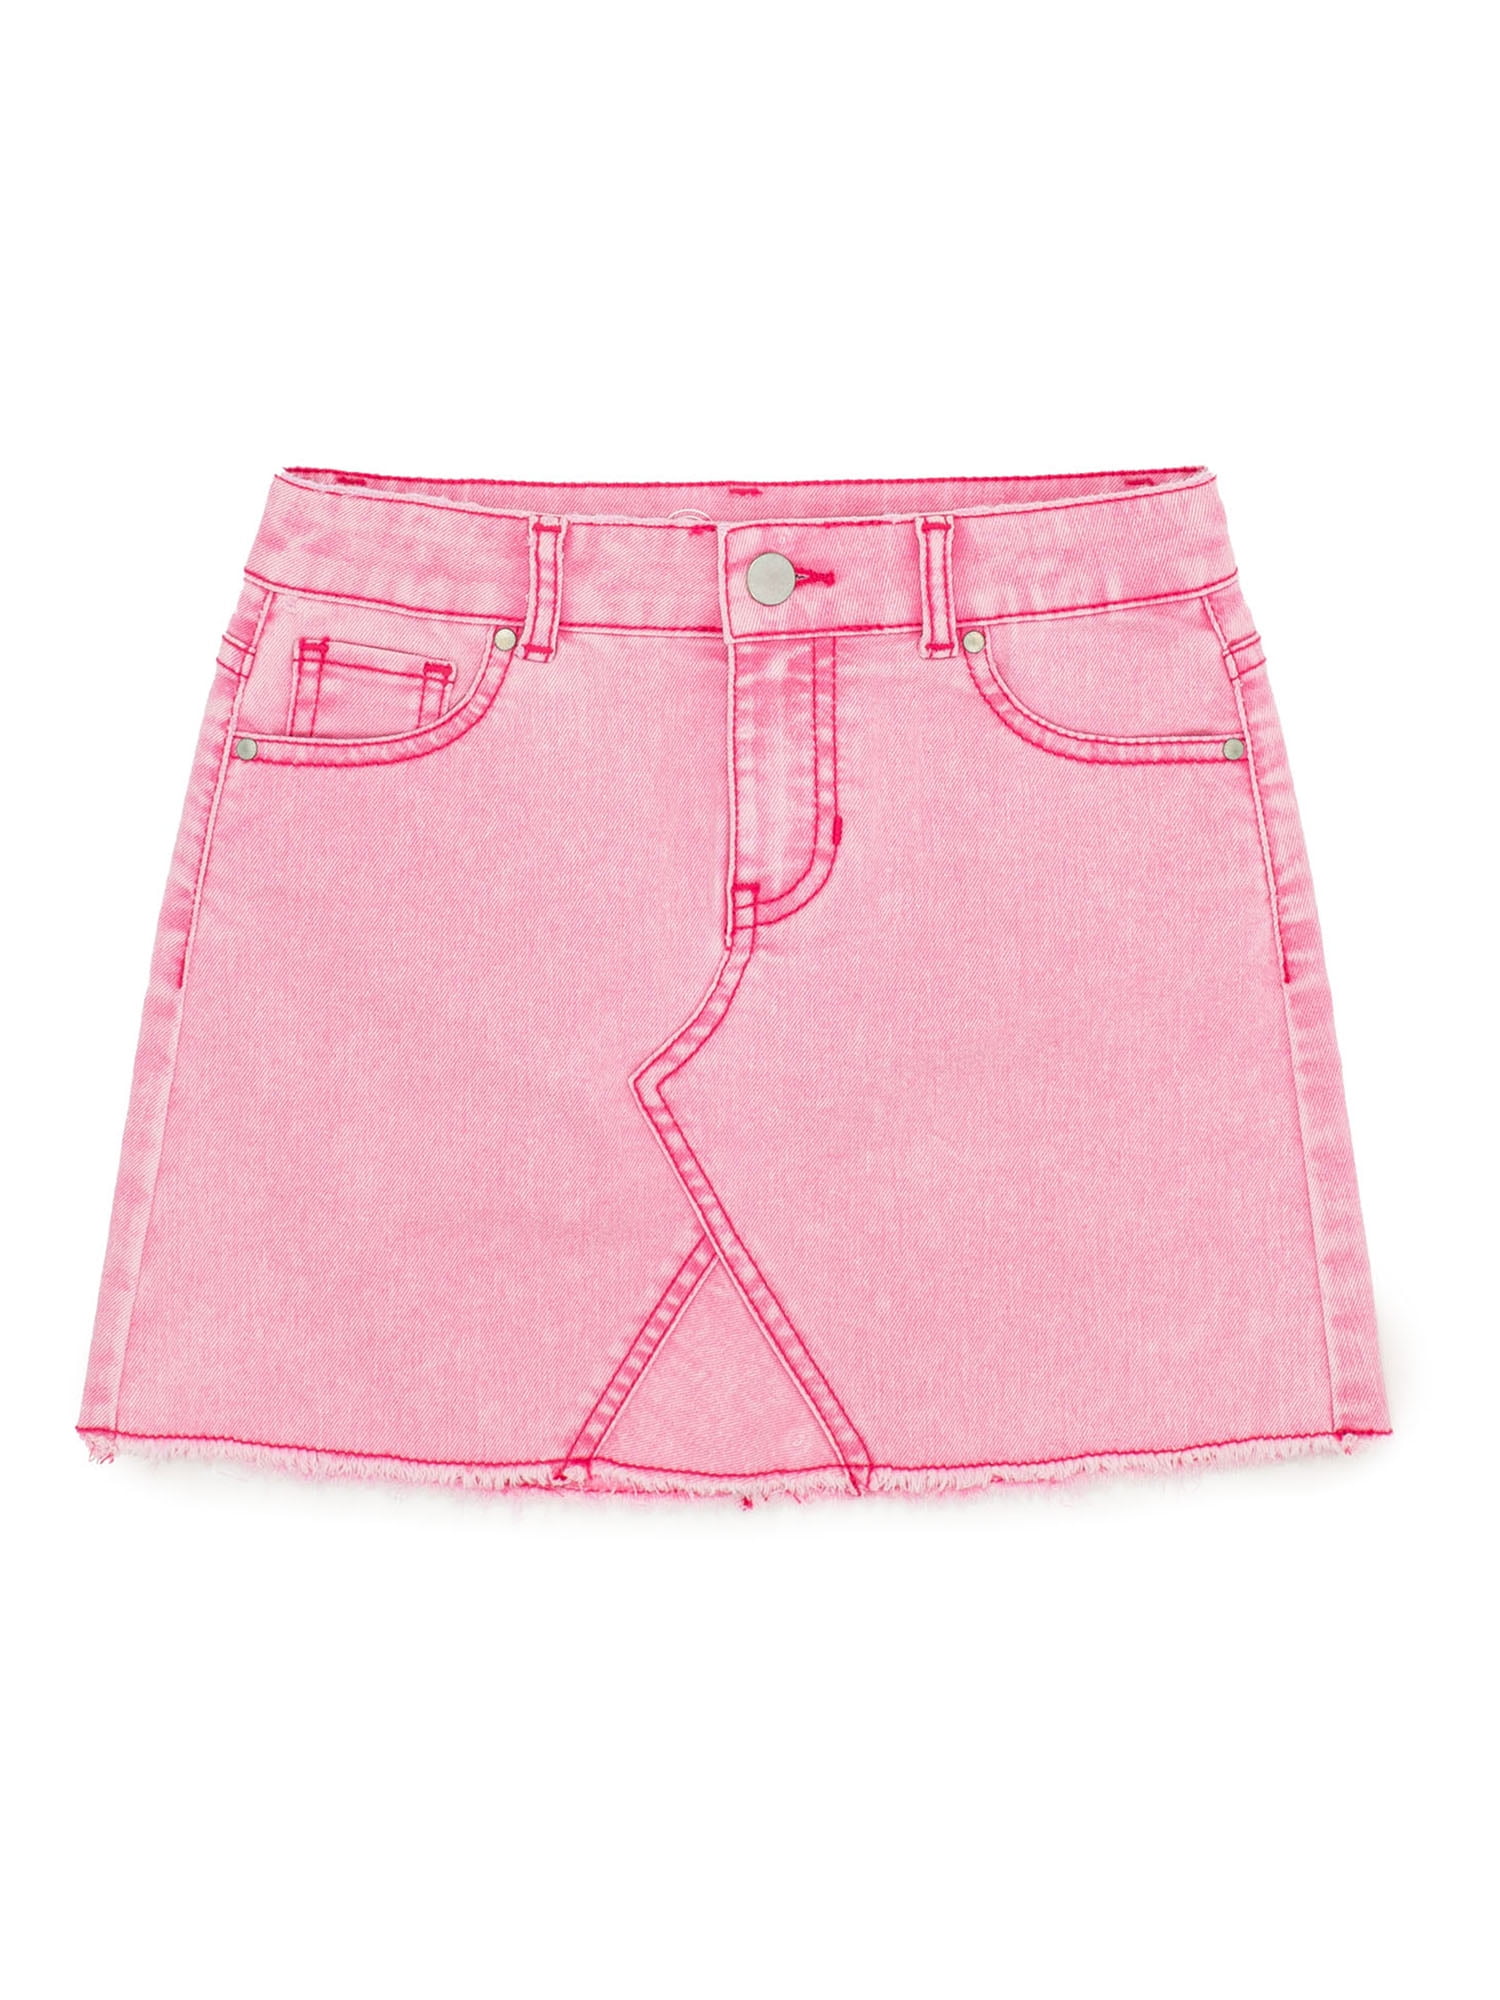 Stretch Denim fabric Classic, bright pink